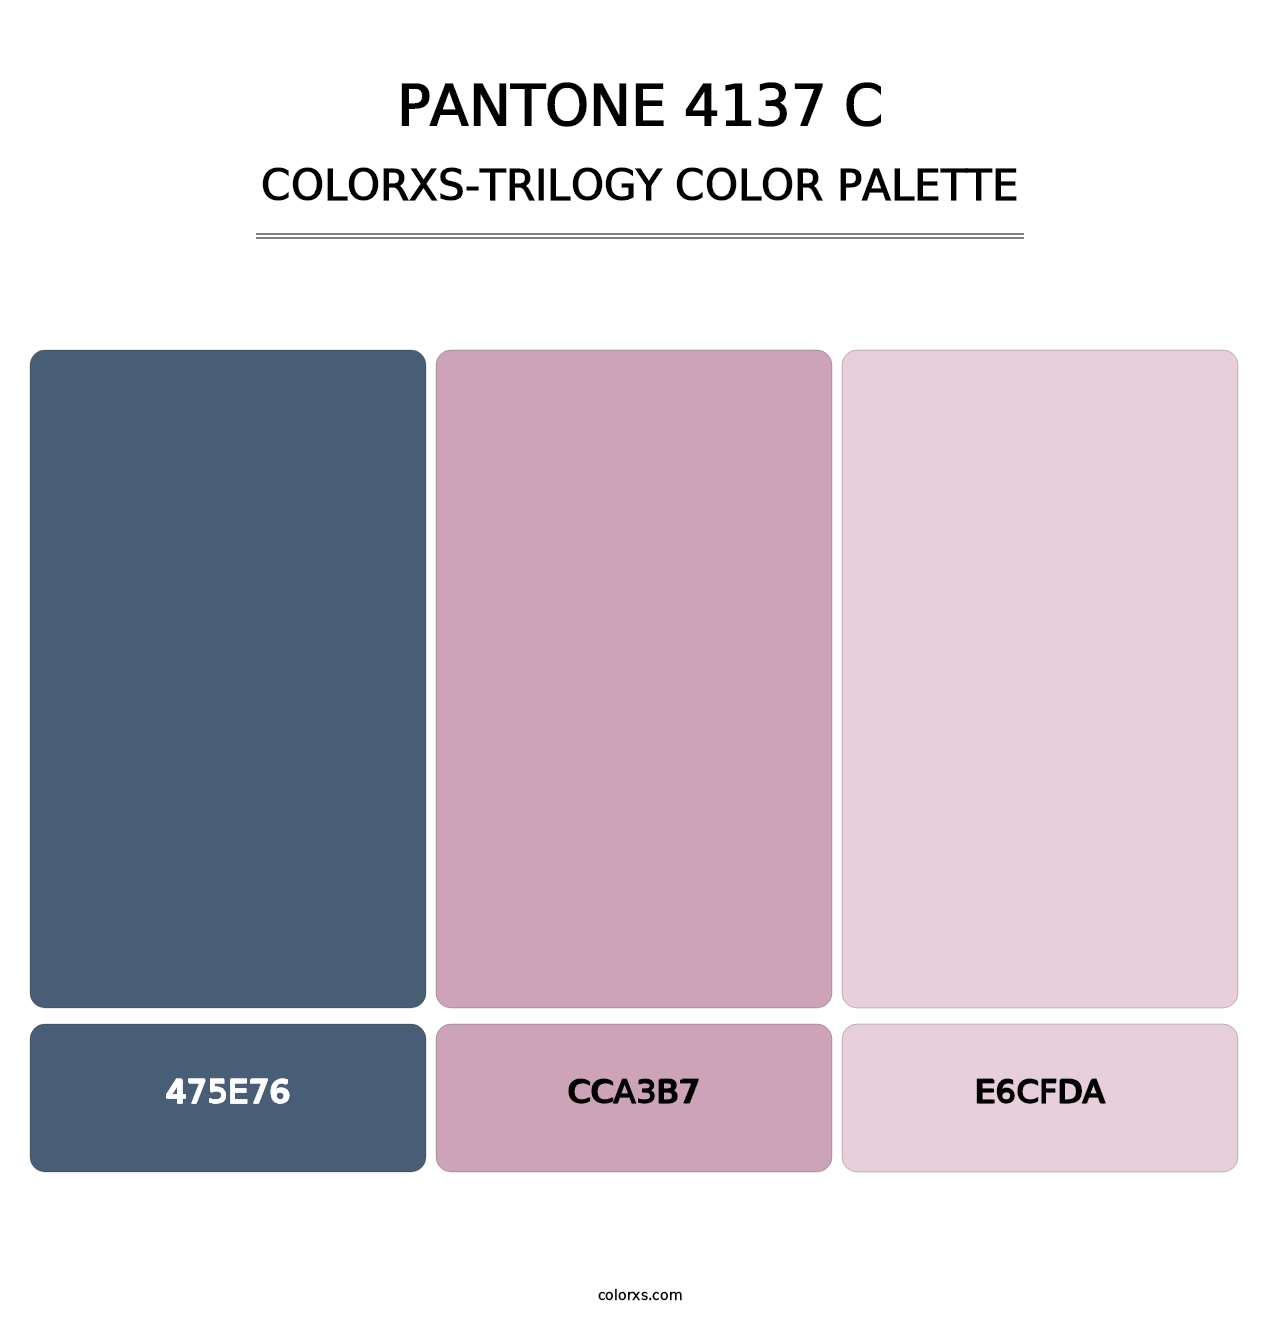 PANTONE 4137 C - Colorxs Trilogy Palette